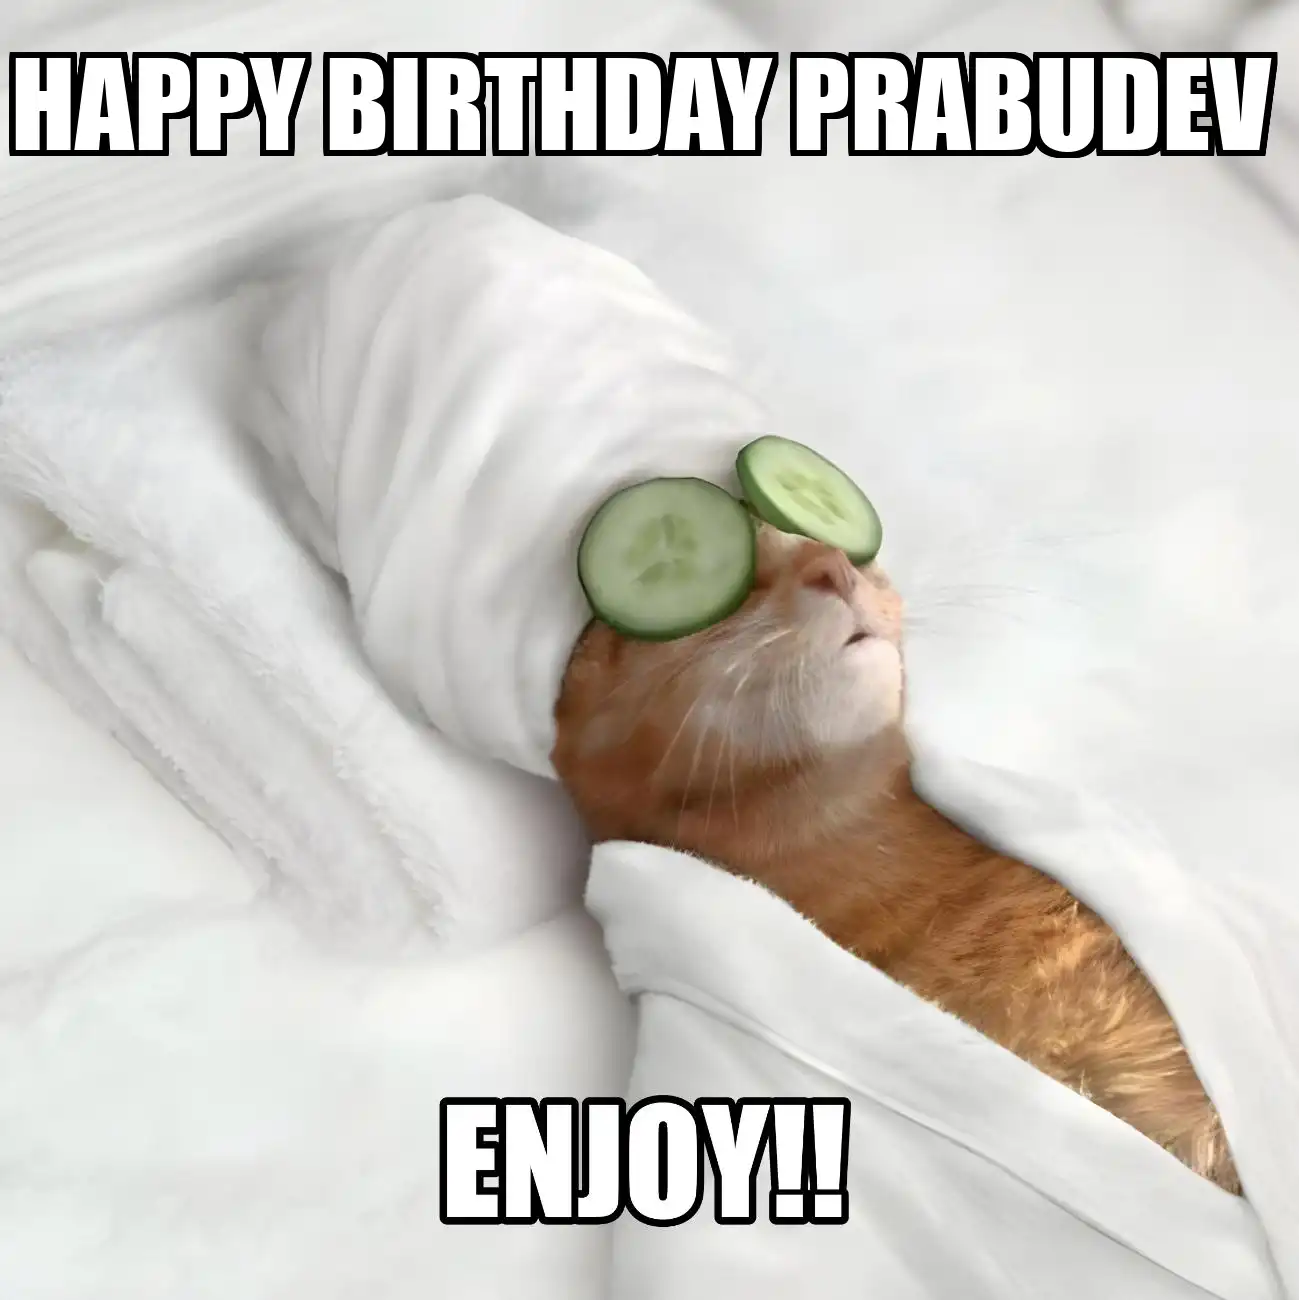 Happy Birthday Prabudev Enjoy Cat Meme